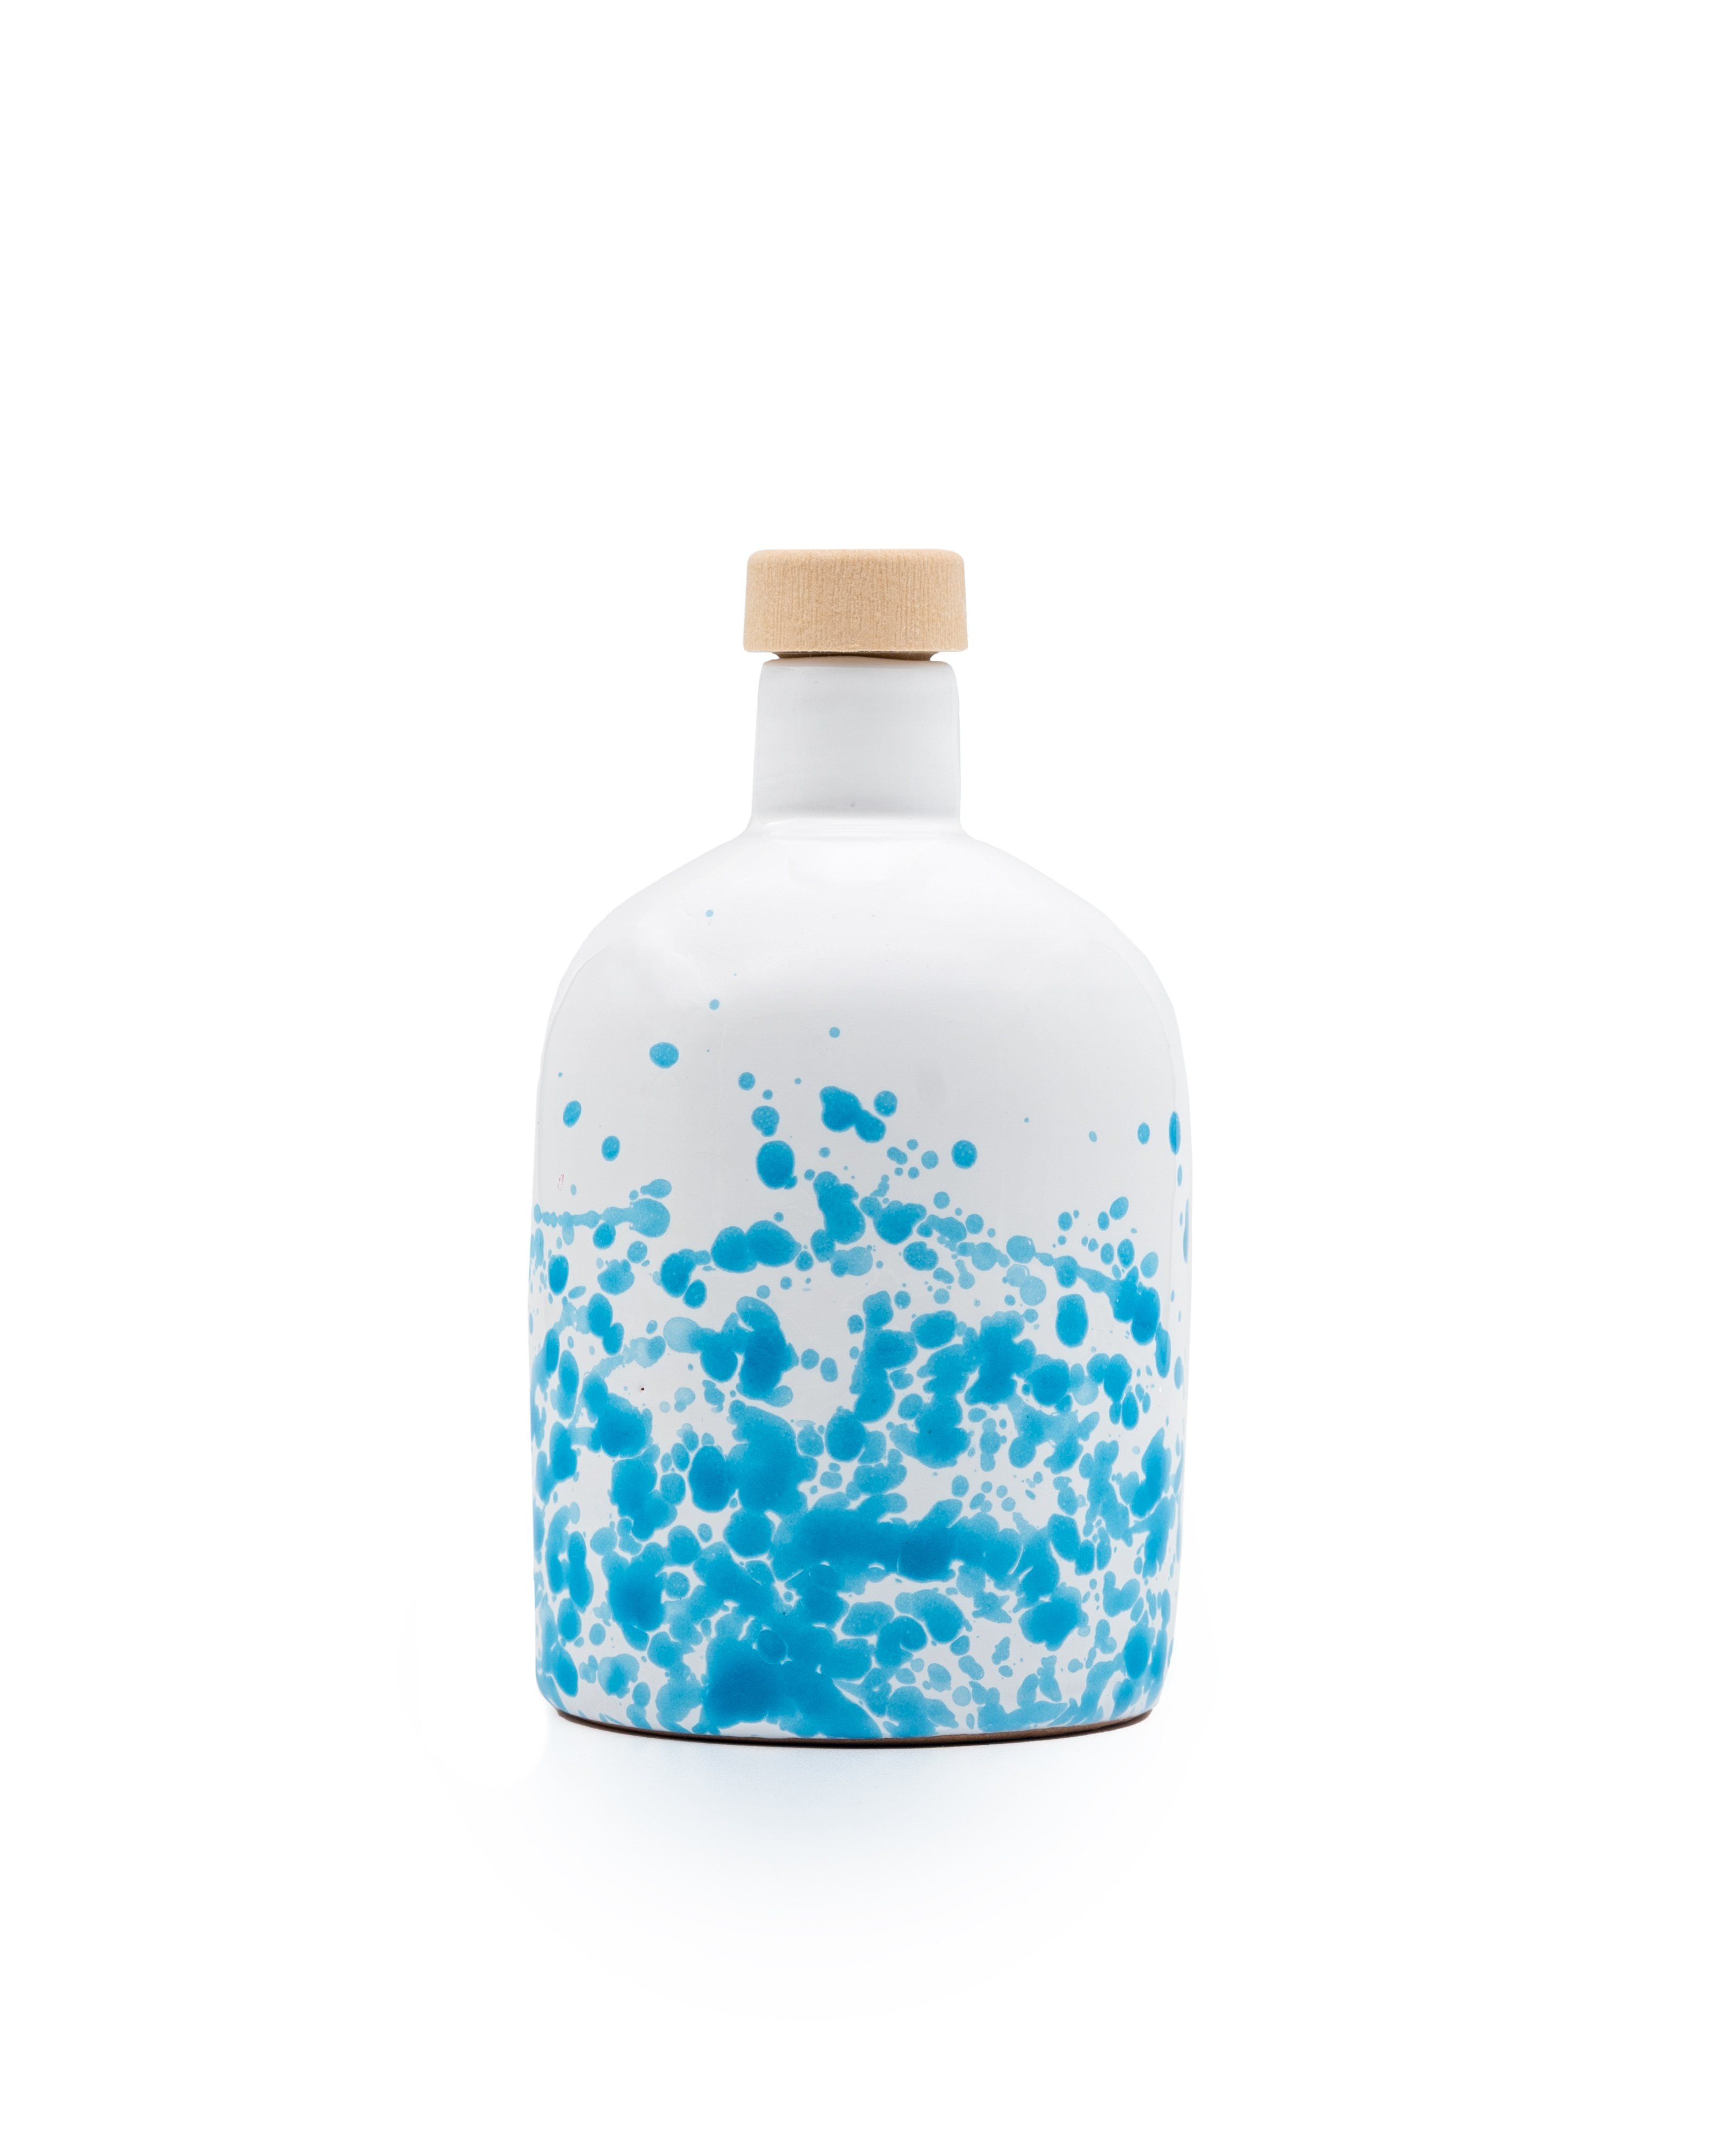 ALLEGRO olio extra vergine di oliva biologico nativo, filtrato, bottiglia di ceramica blu da 500 ml.